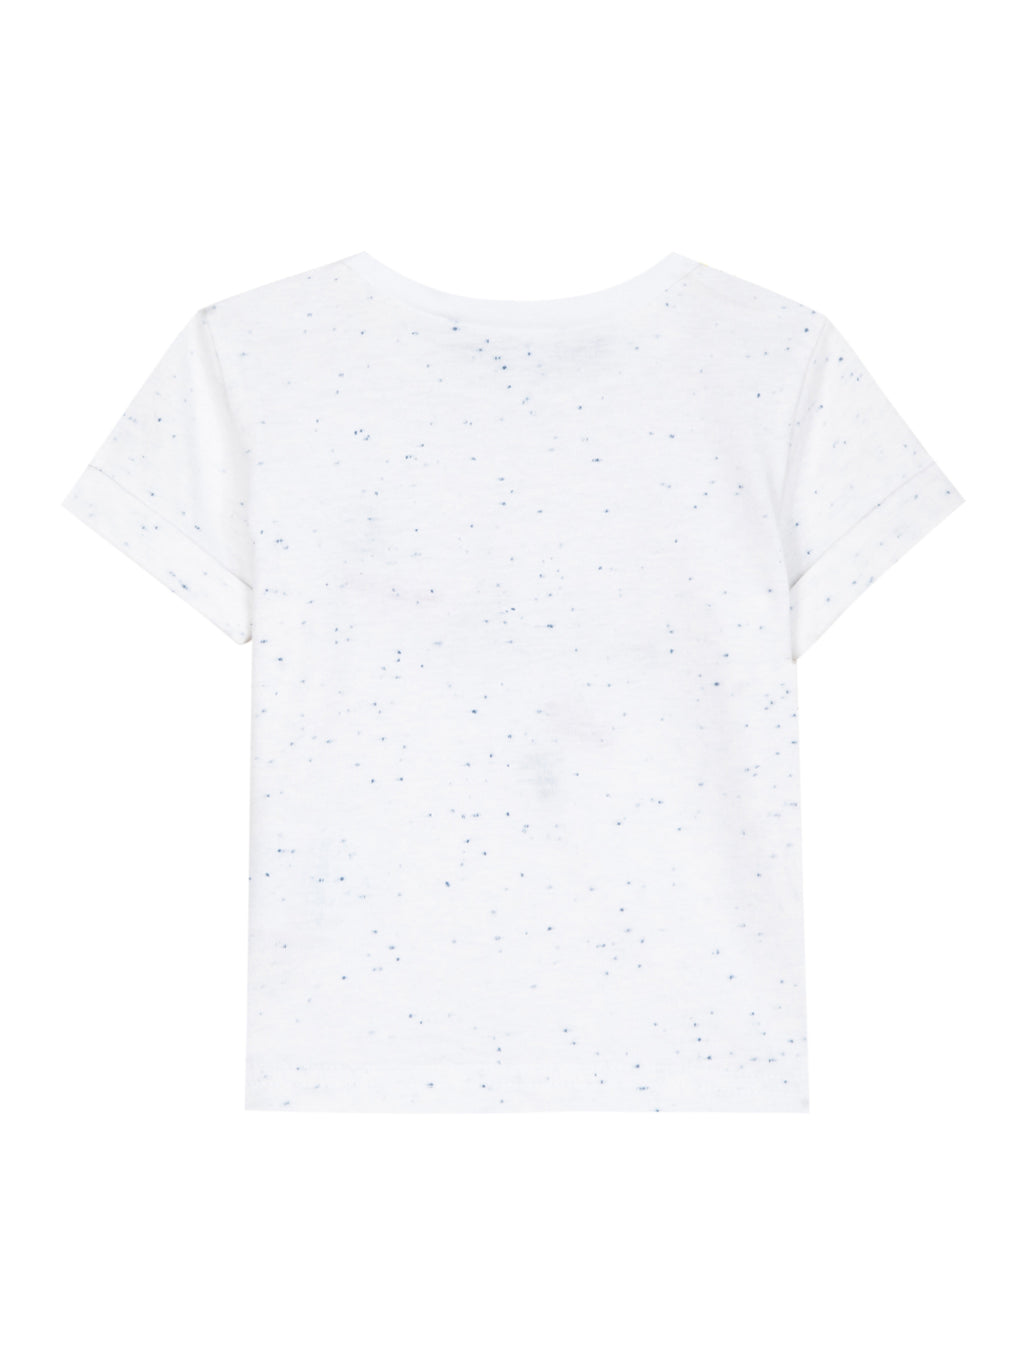 Tee-shirt - Jersey moucheté blanc